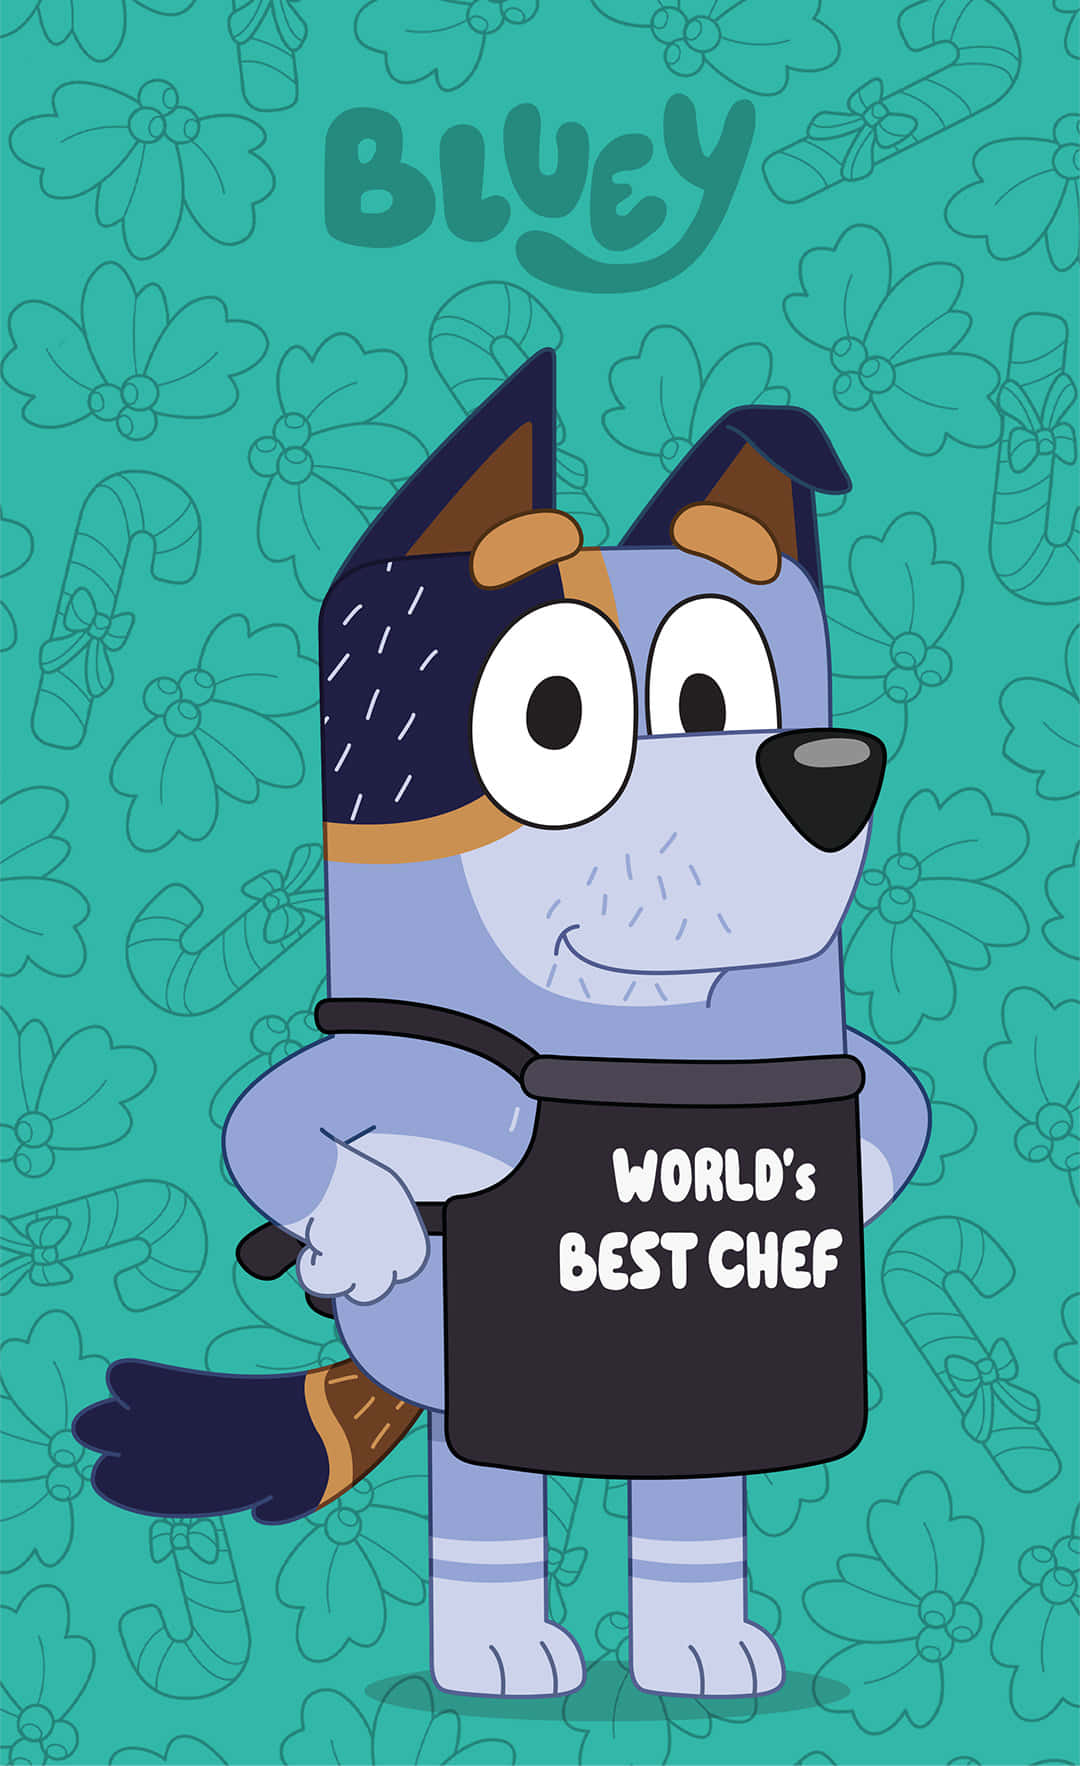 Bluey Worlds Best Chef Cartoon Illustration Wallpaper